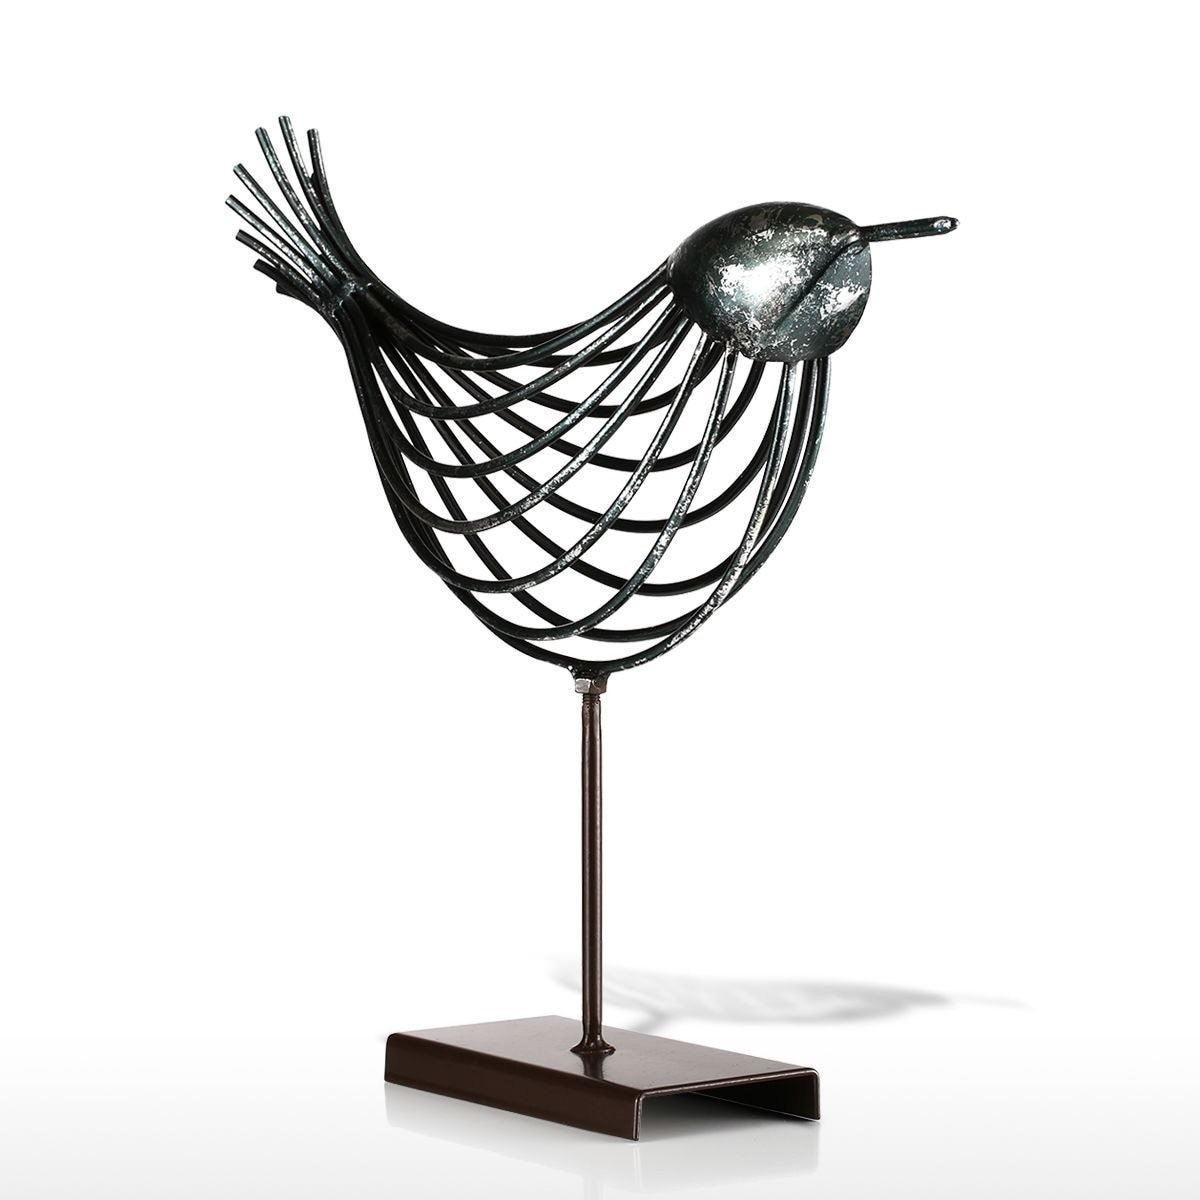 Tooarts 鉄線 鳥 小鳥 ことり 置物 金属 鳥工芸 装飾品 アート ギフト リビング インテリア オーナメント デザイン選択可